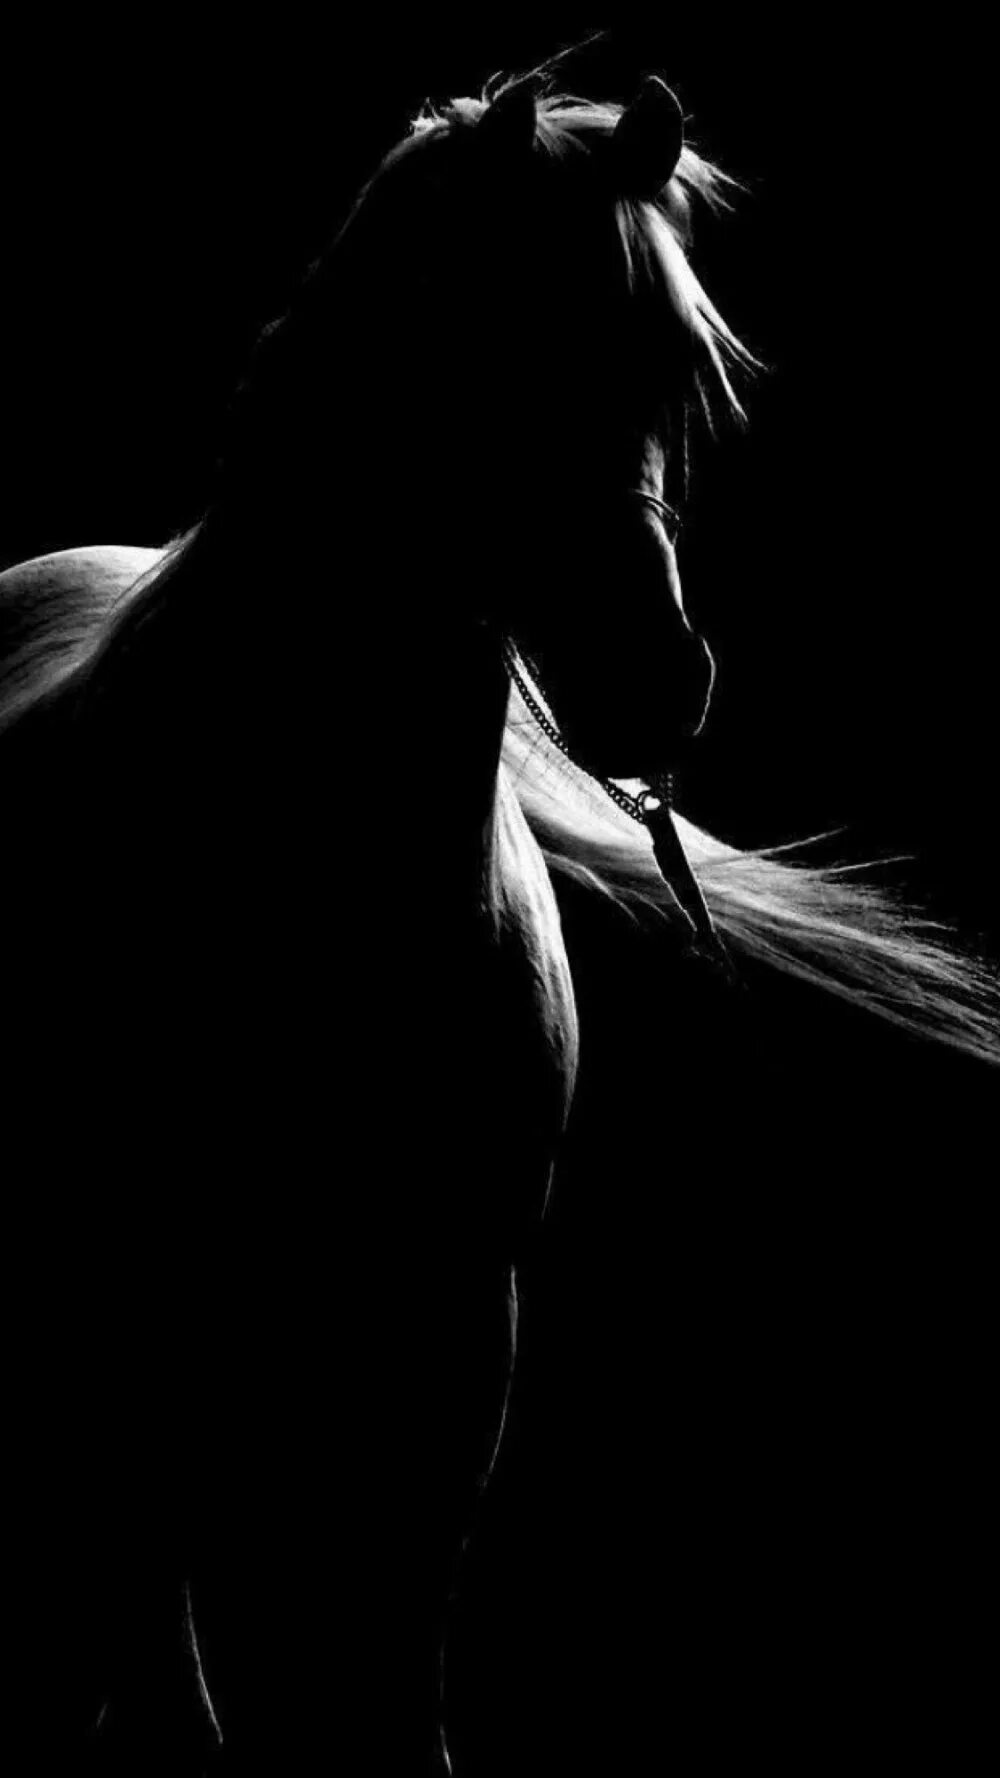 Лошадь в темноте. Лошадь черный. Лошадь на черном фоне. Лошадь на темном фоне. Черная лошадь на черном фоне.